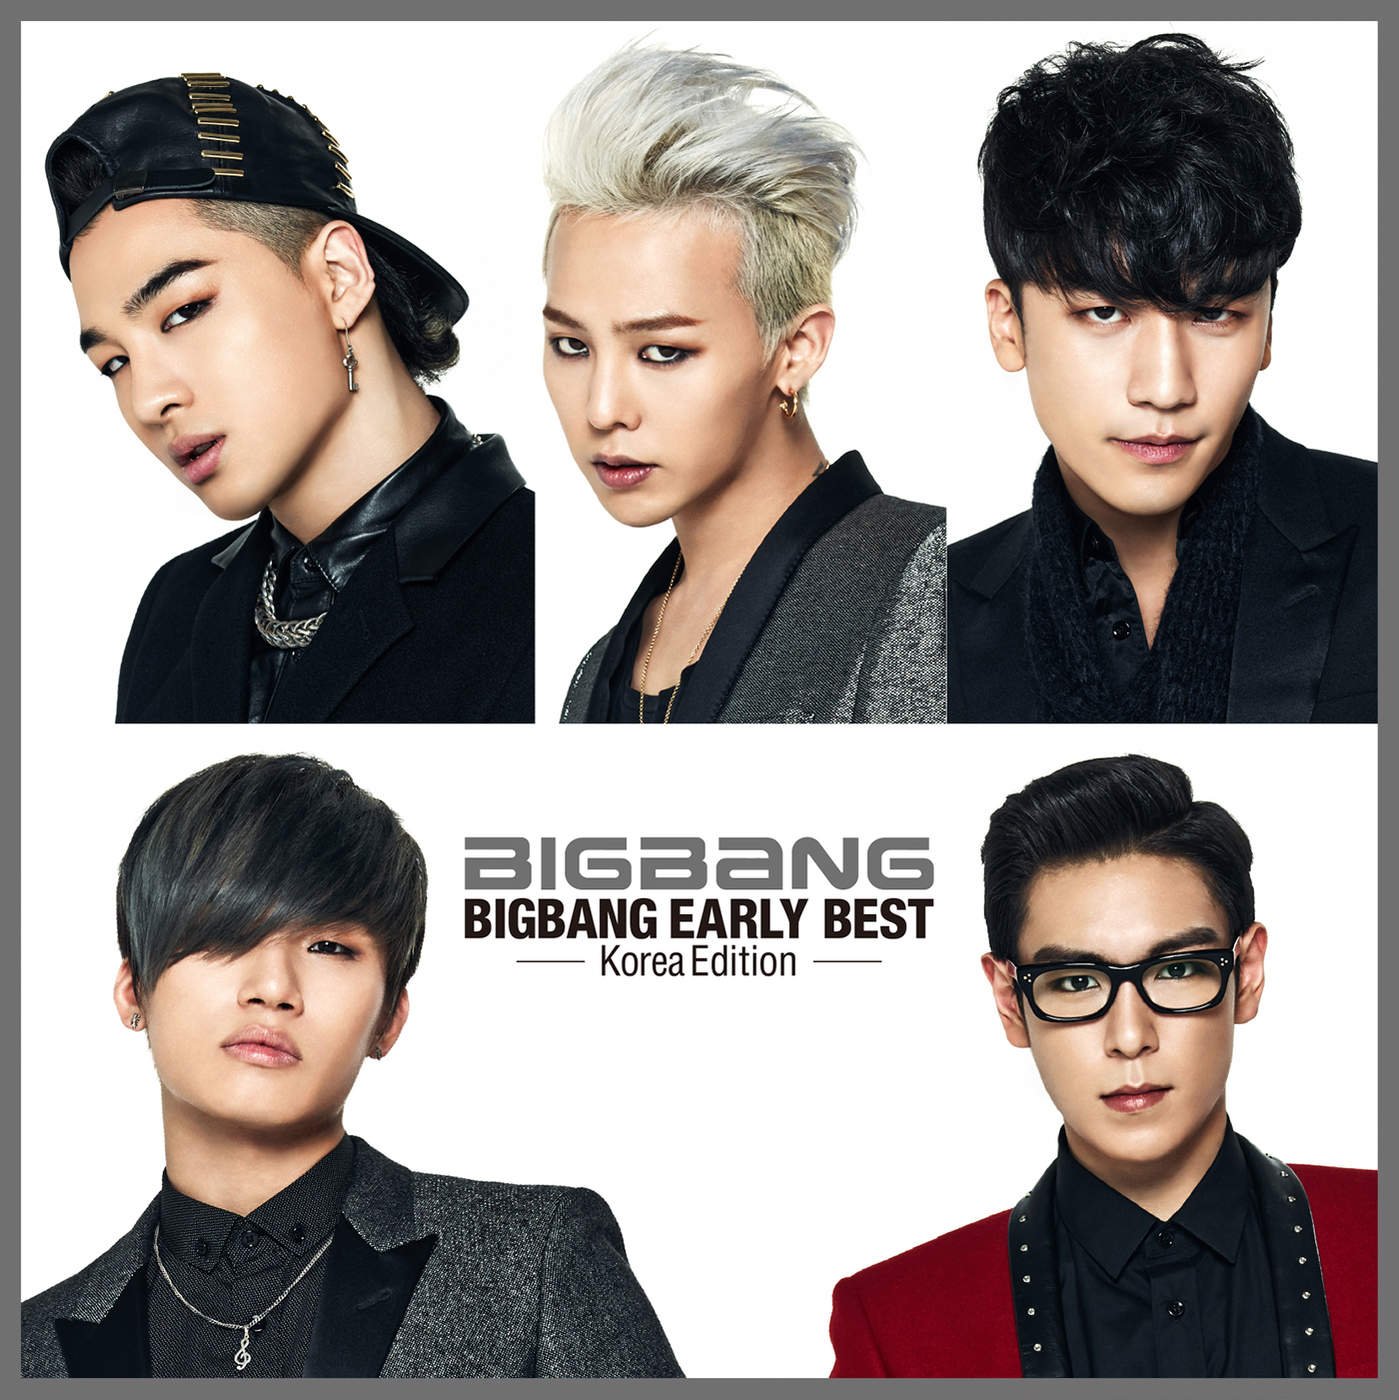 Bang bang участники. Биг бэнг группа. Корейская группа big Bang. Группа big Bang имена. Биг бэнг группа участники.